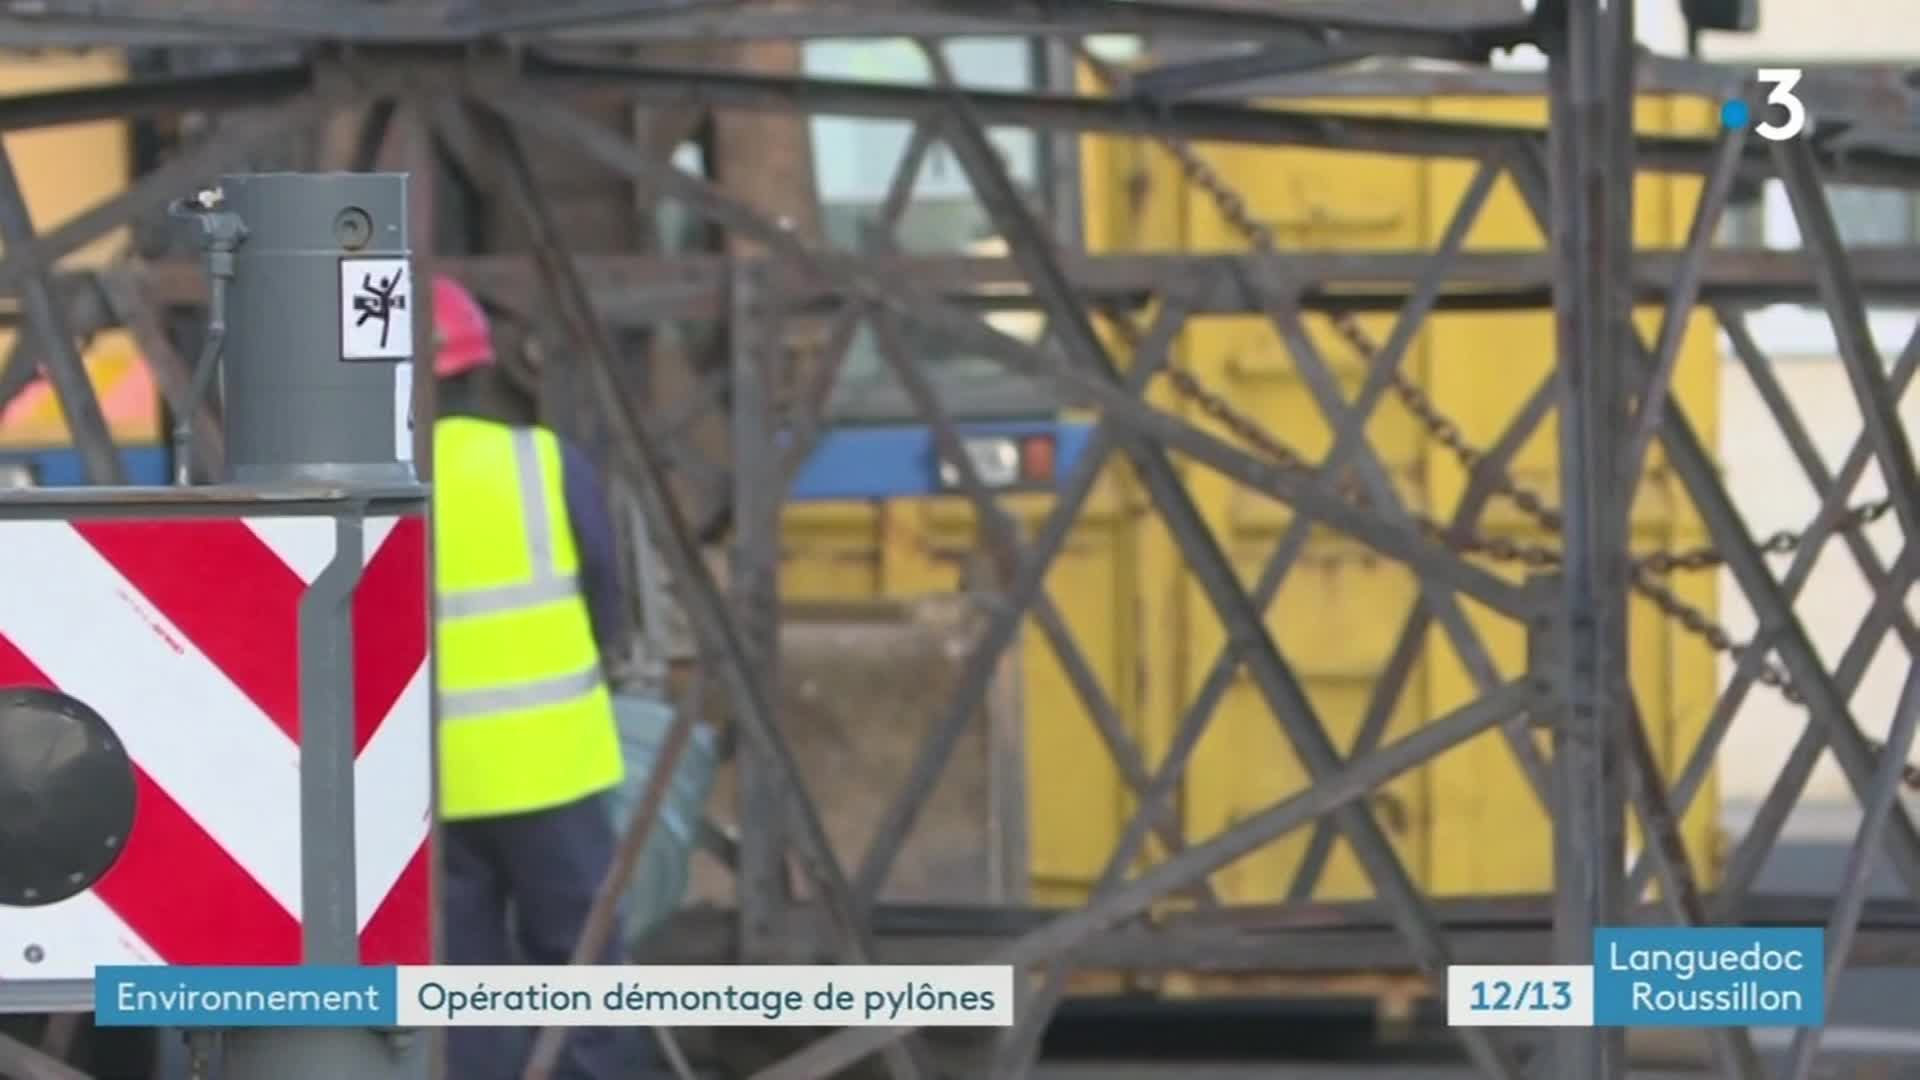 12/13 - F3 Languedoc-Roussillon - 07-12-2021 - démontage d'un pilonne